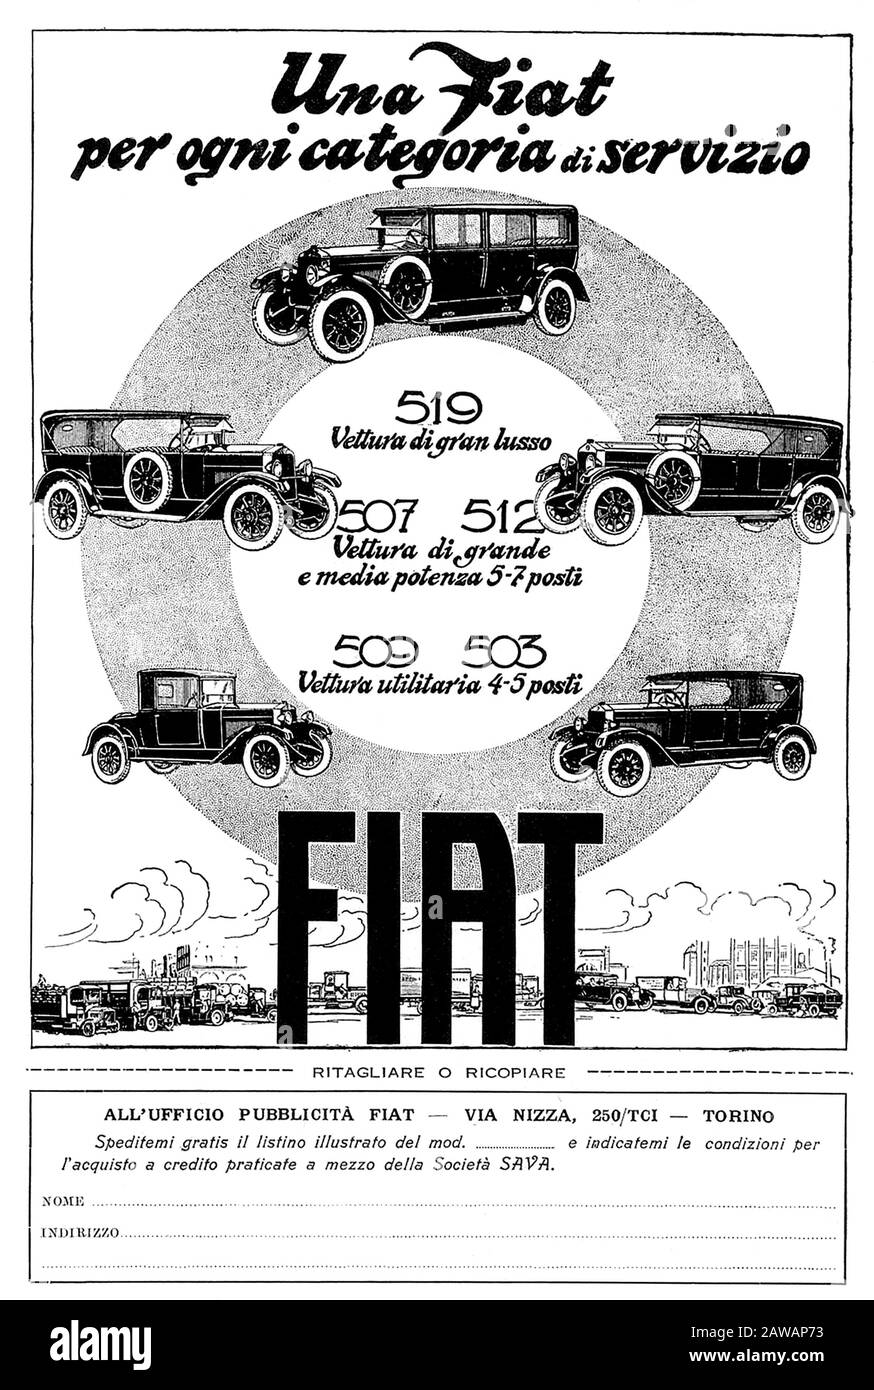 1926 , ITALIA : l'industria automobilistica italiana FIAT ( F.I.A.T.  Fabbrica Italiana Automobili Torino ) Pubblicità per i modelli FIAT 509 ,  503 , 507 , 512 e 519 Foto stock - Alamy